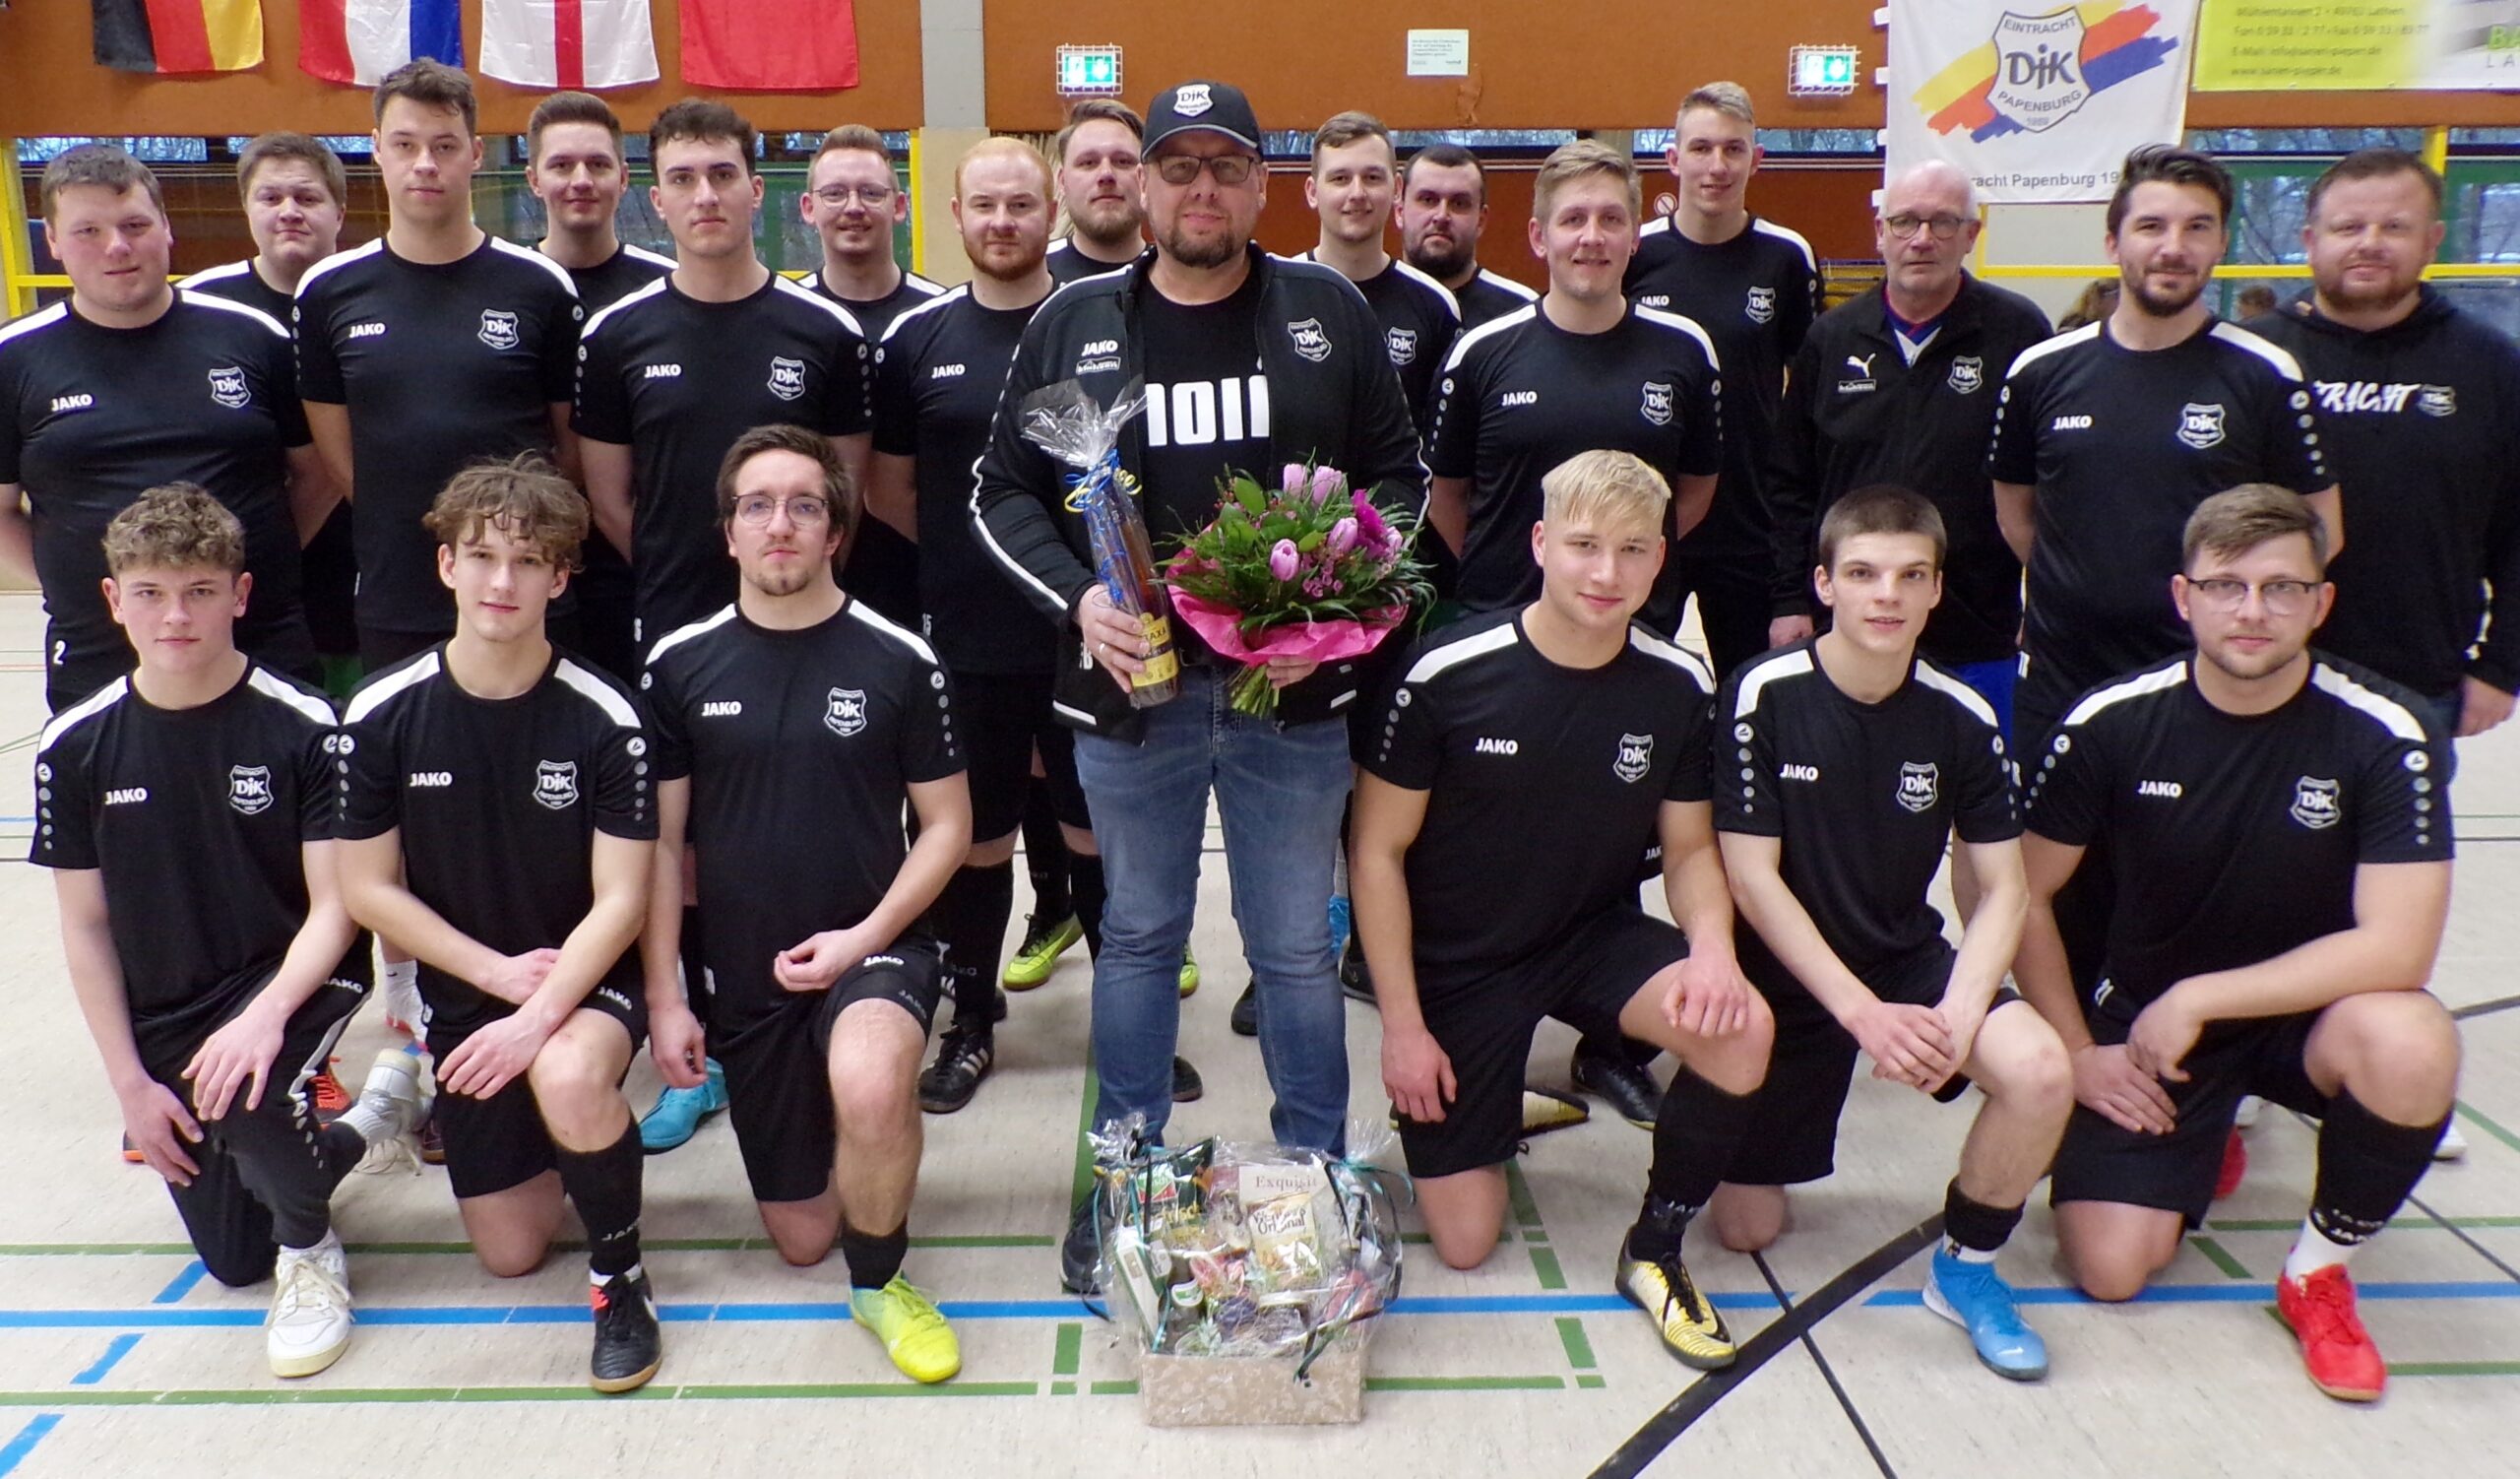 Im neuen Look präsentiert sich das Team.
Fotos: DJK Eintracht Papenburg